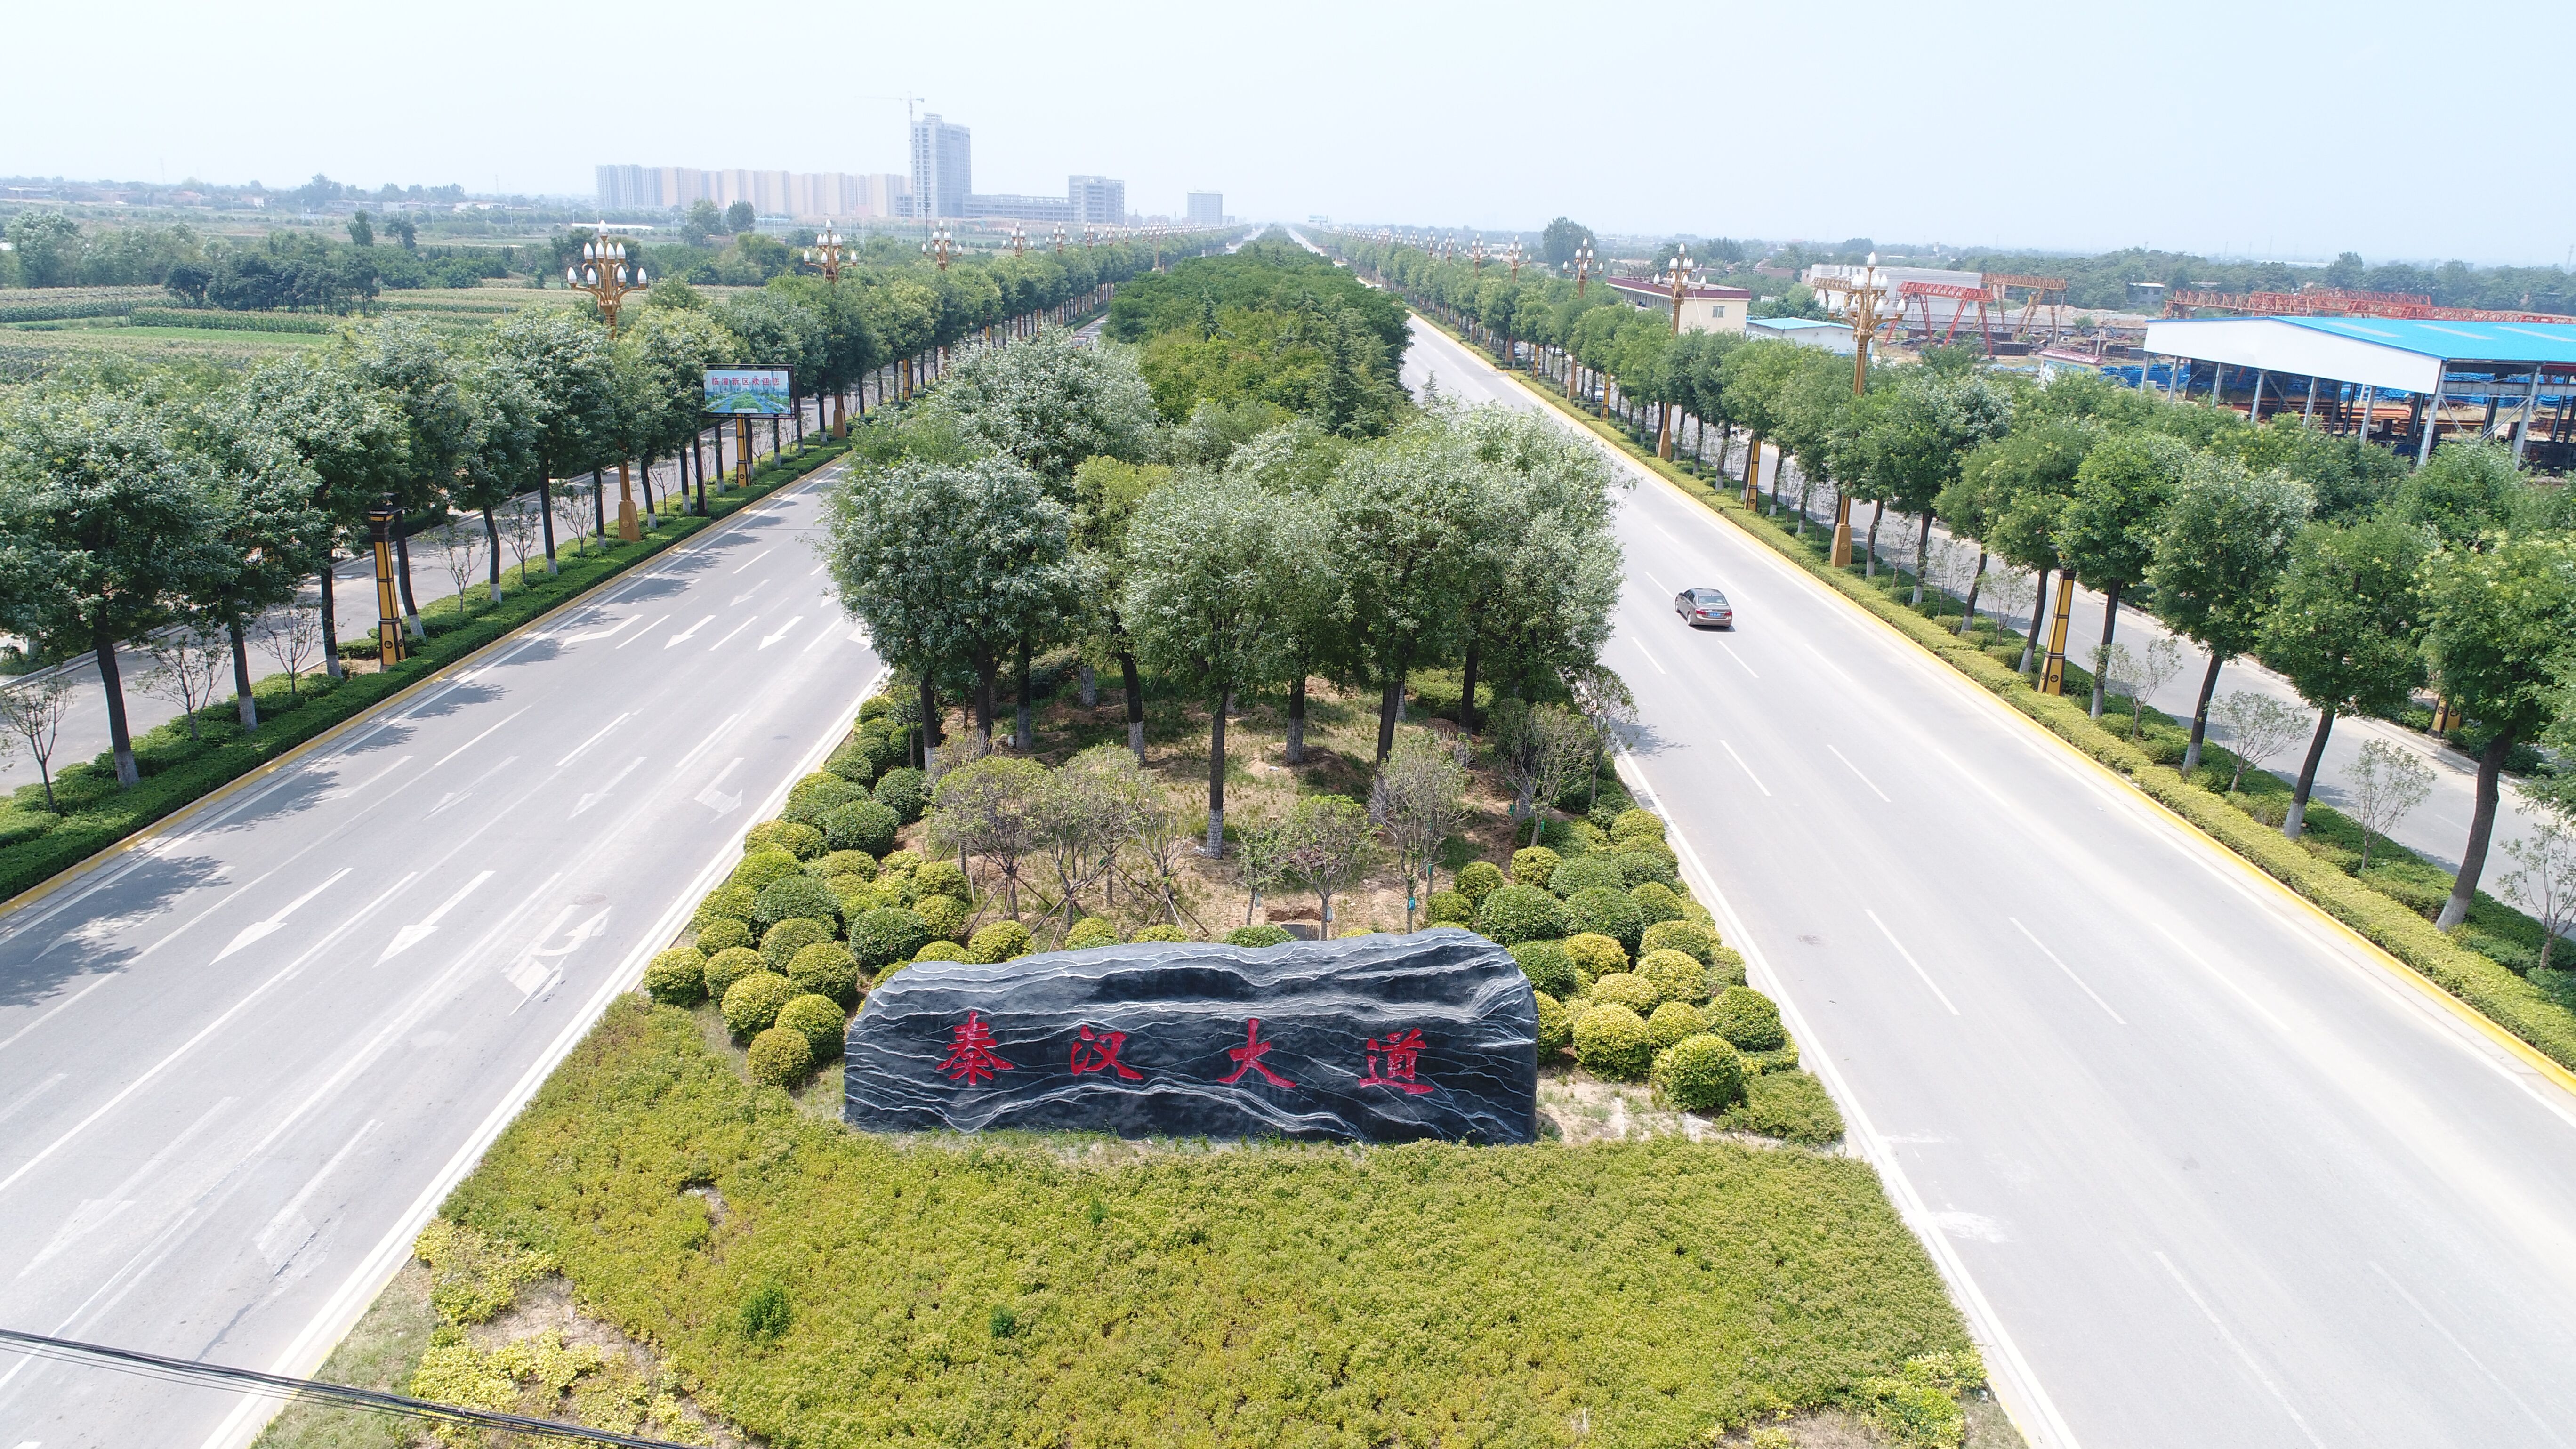 境内拥有千亩绿地公园,三大天然水系景观长廊,仅秦汉大道新区段绿化